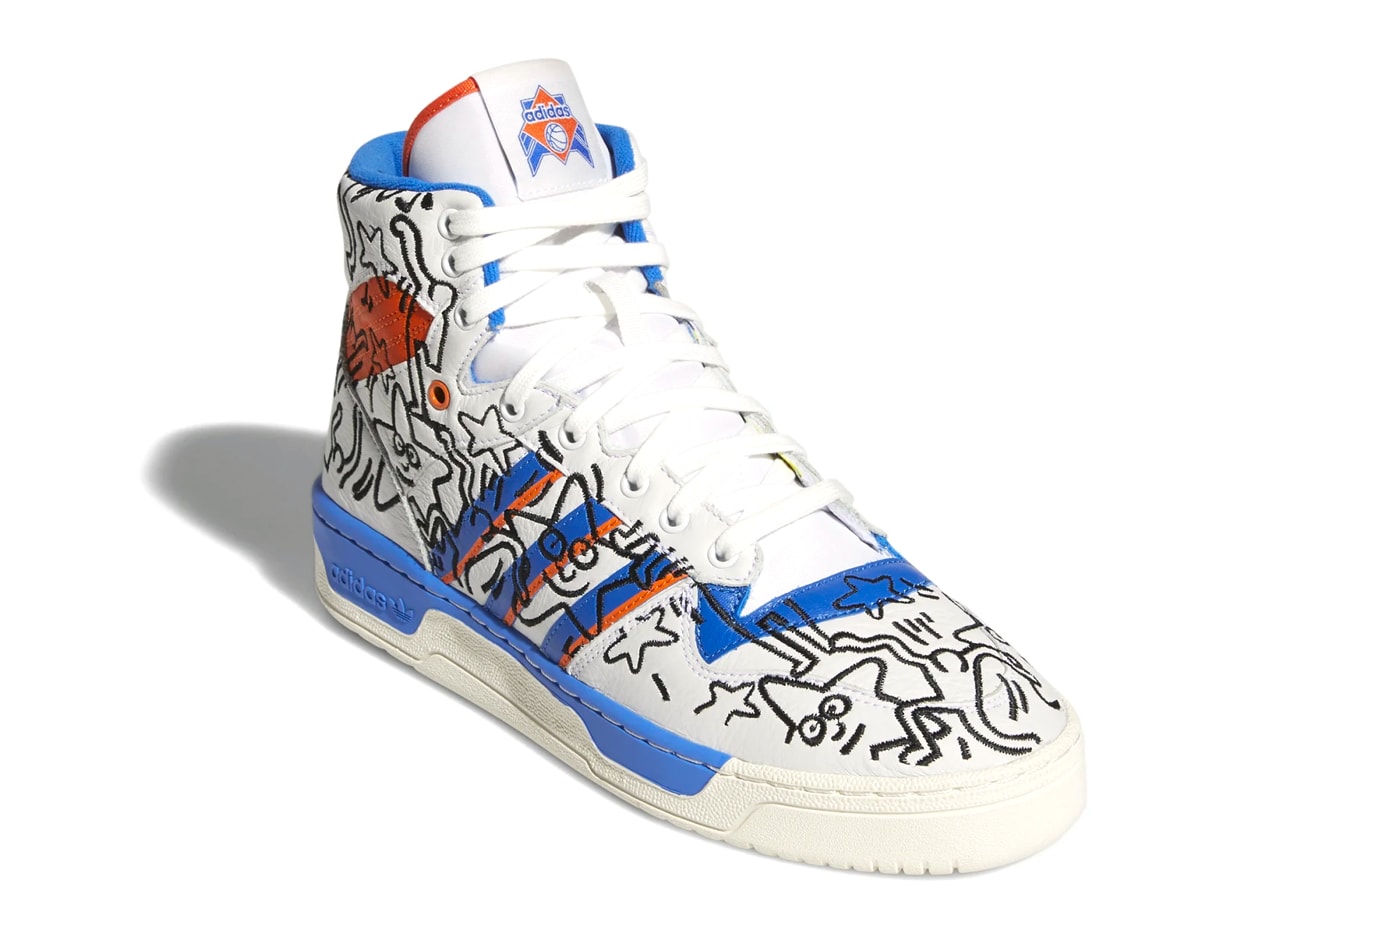 Adidas x Keith Haring